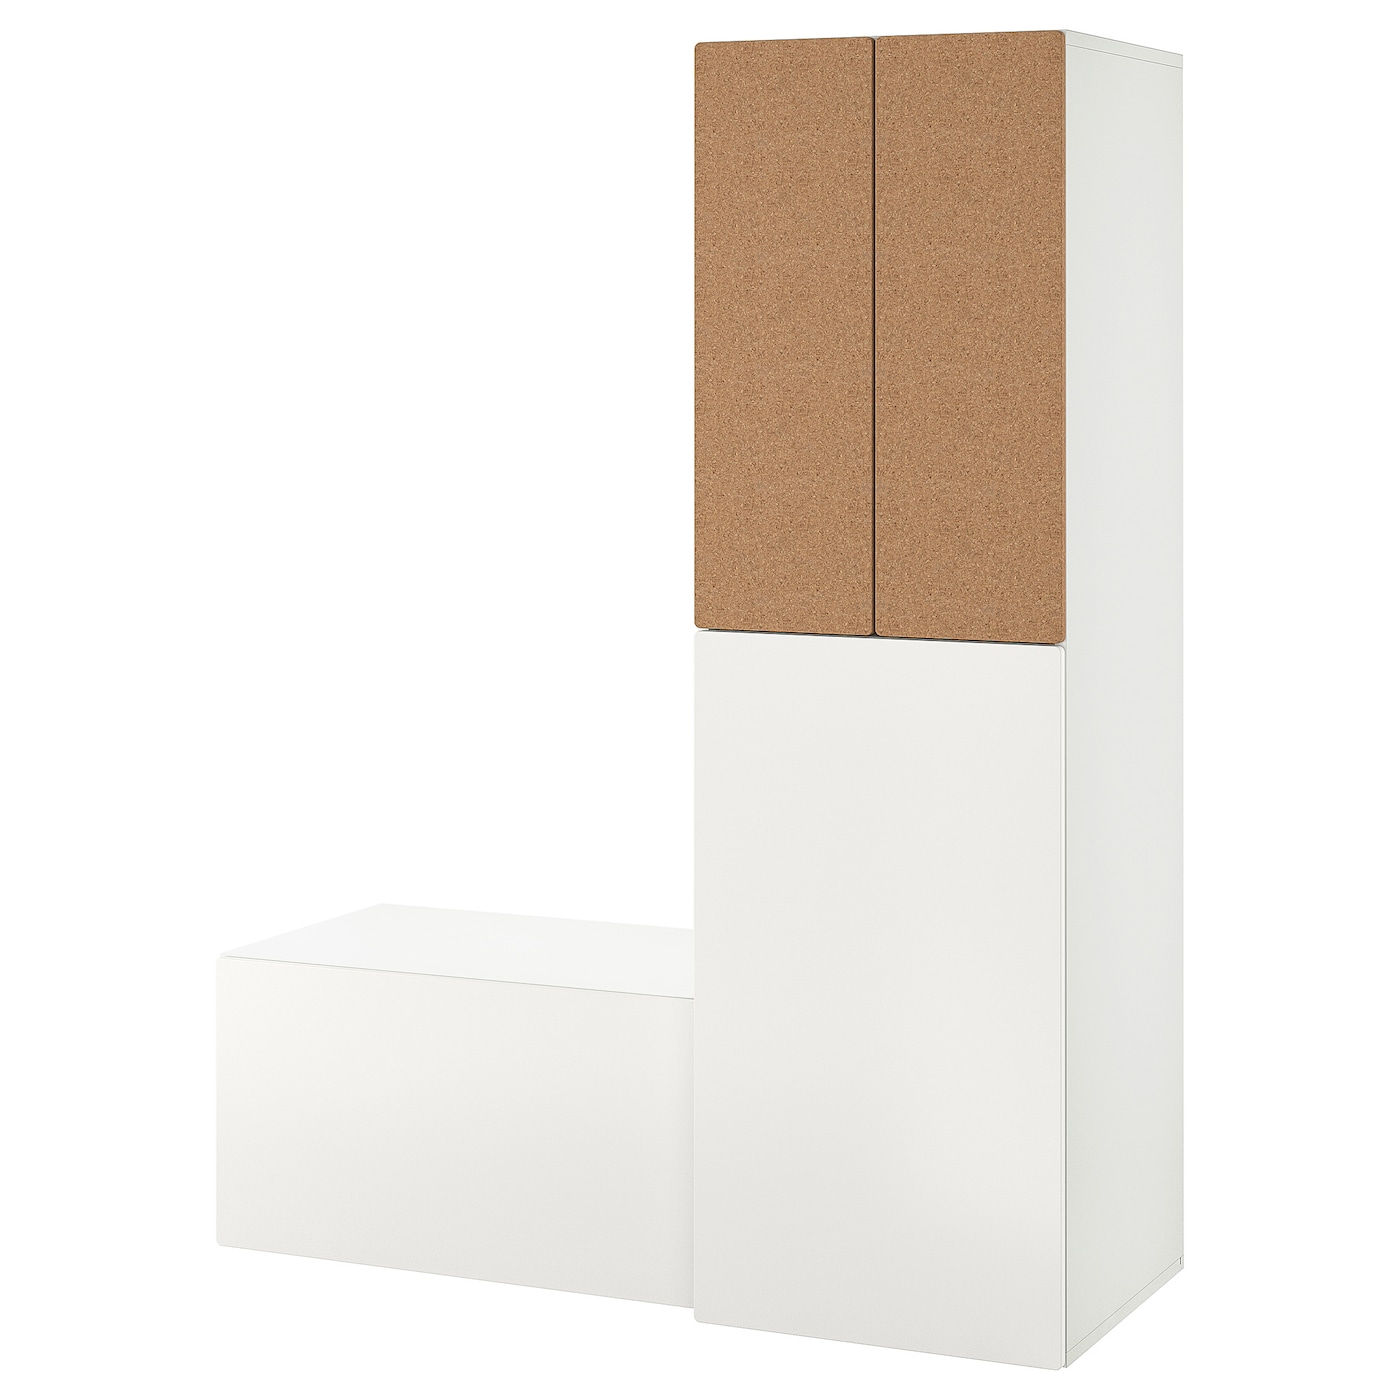 Детская гардеробная комбинация - IKEA PLATSA SMÅSTAD/SMASTAD, 196x57x150см, белый, ПЛАТСА СМОСТАД ИКЕА